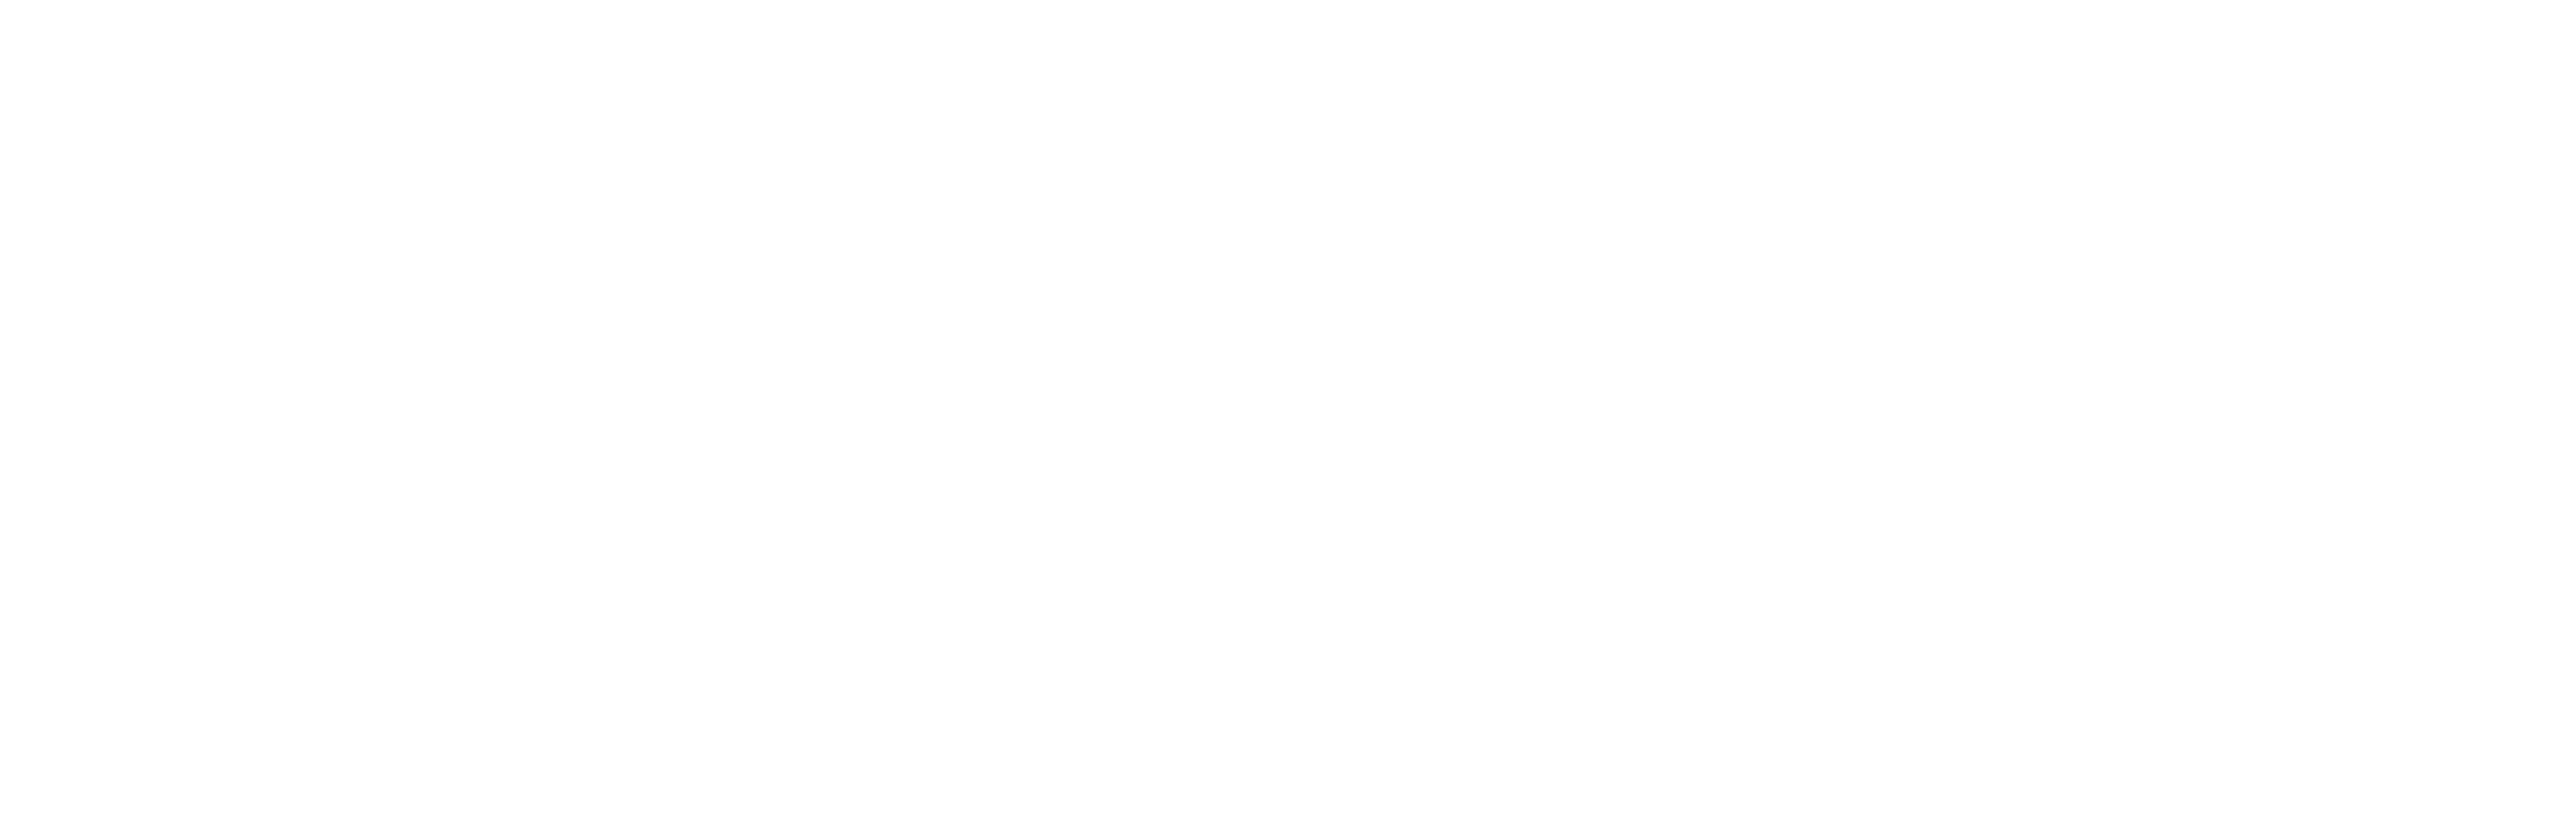 Dungeons & Dragons logo